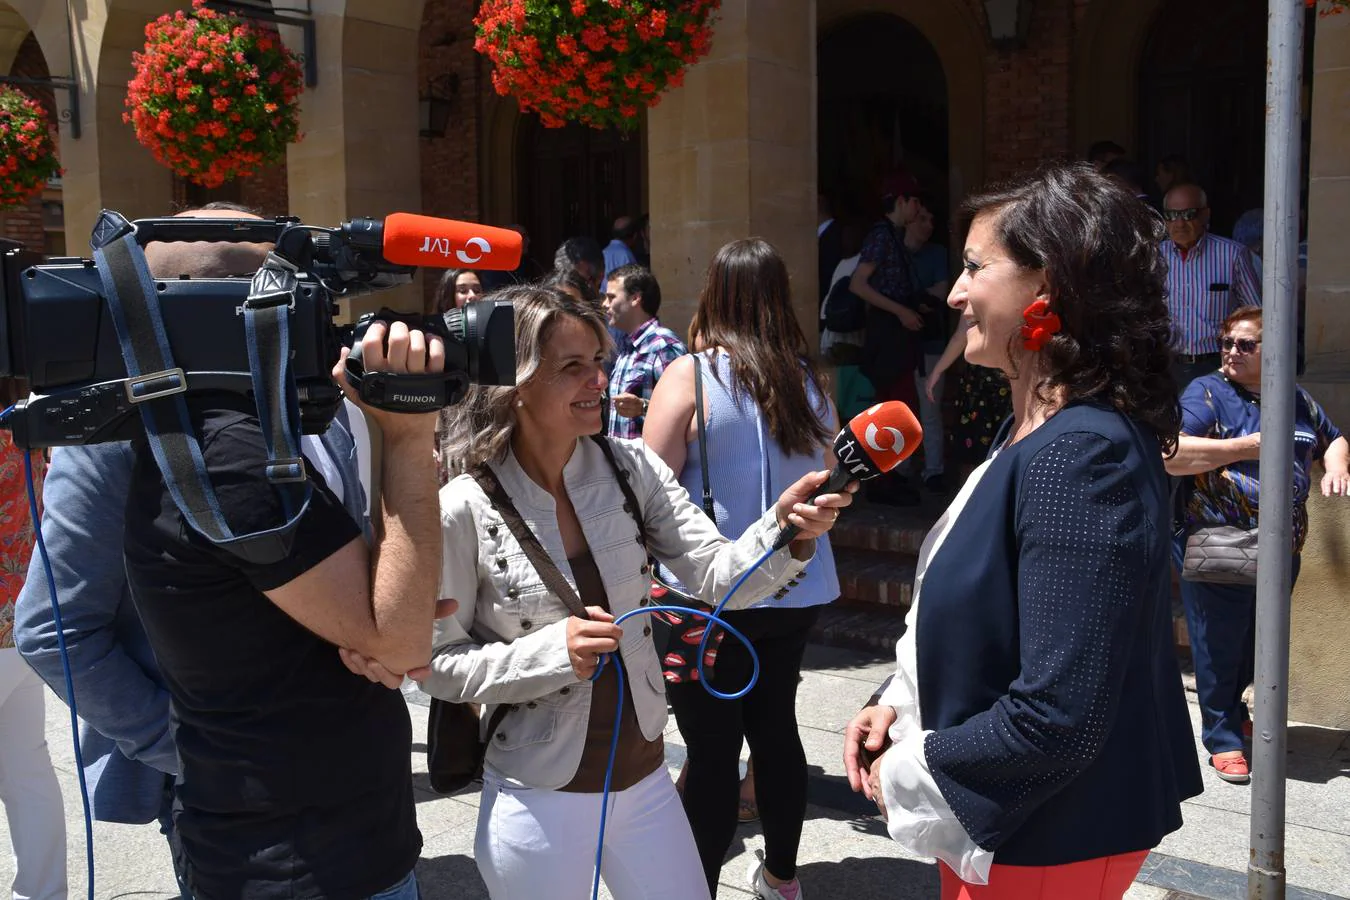 Fotos: Las imágenes de la investidura de Elisa Garrido como alcaldesa de Calahorra